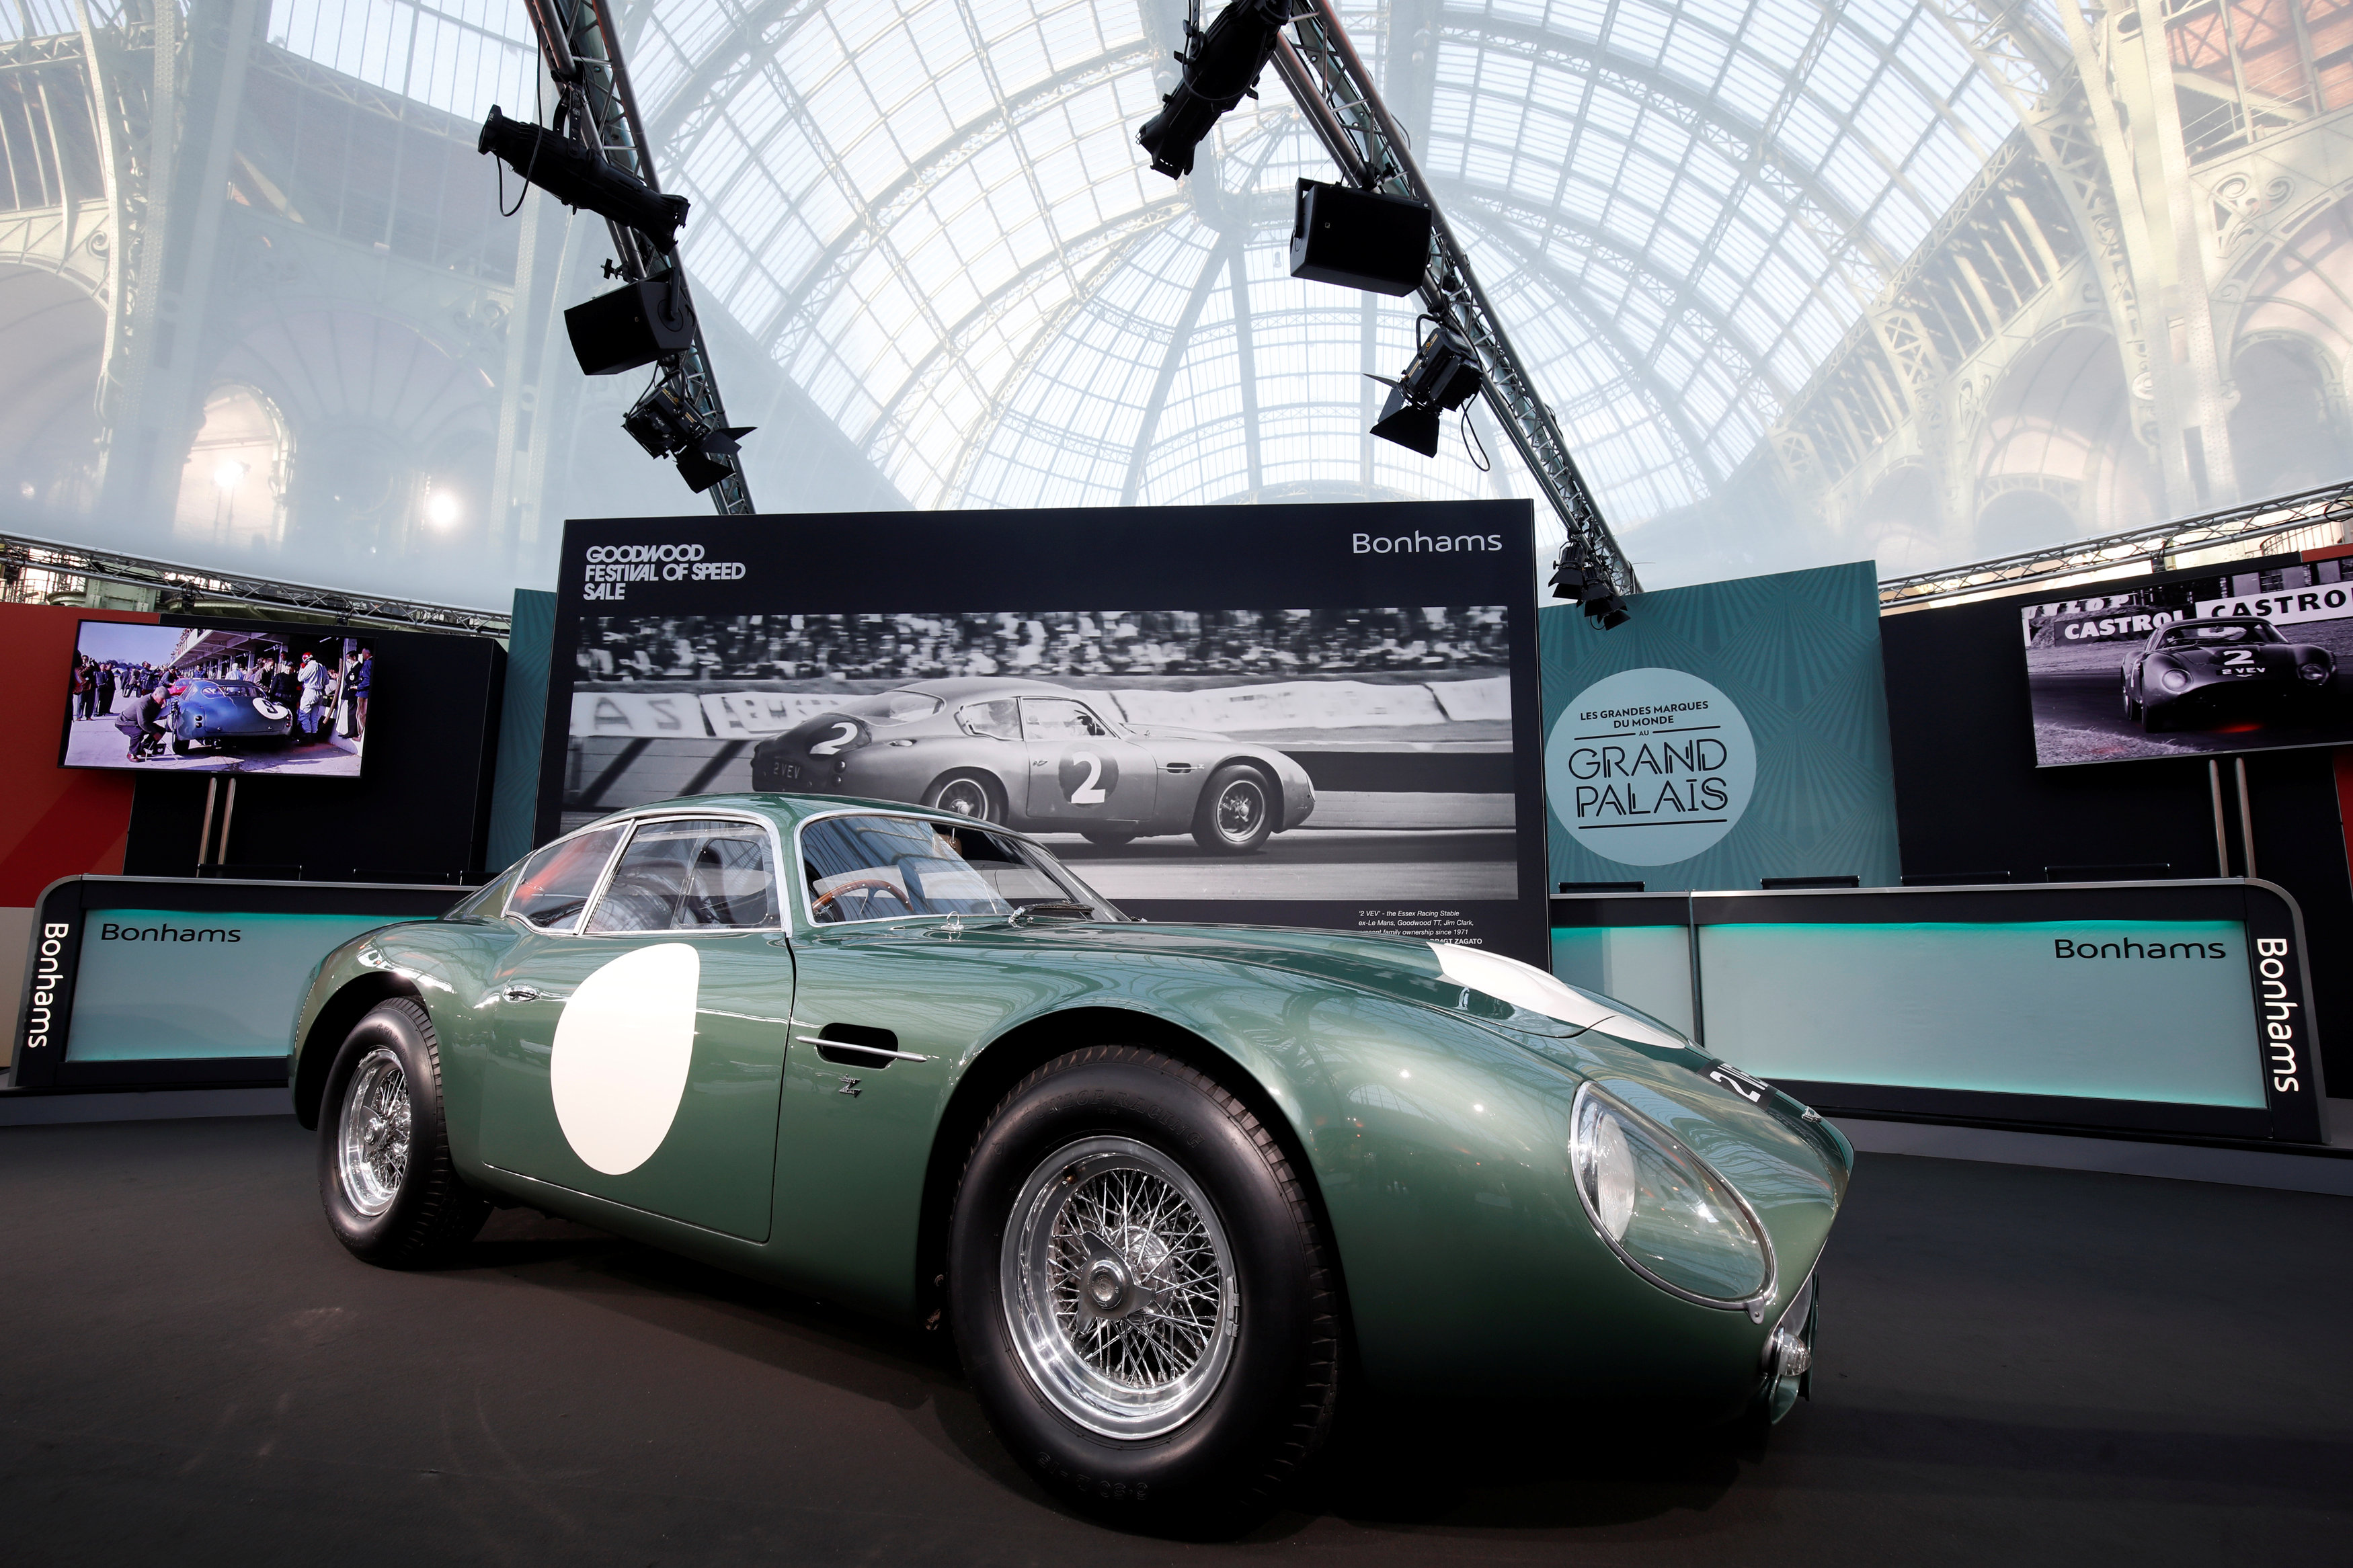 Der Aston Martin DB4 GT von 1961 wurde zuvor von der britischen F1-Legende Jim Clark gefahren